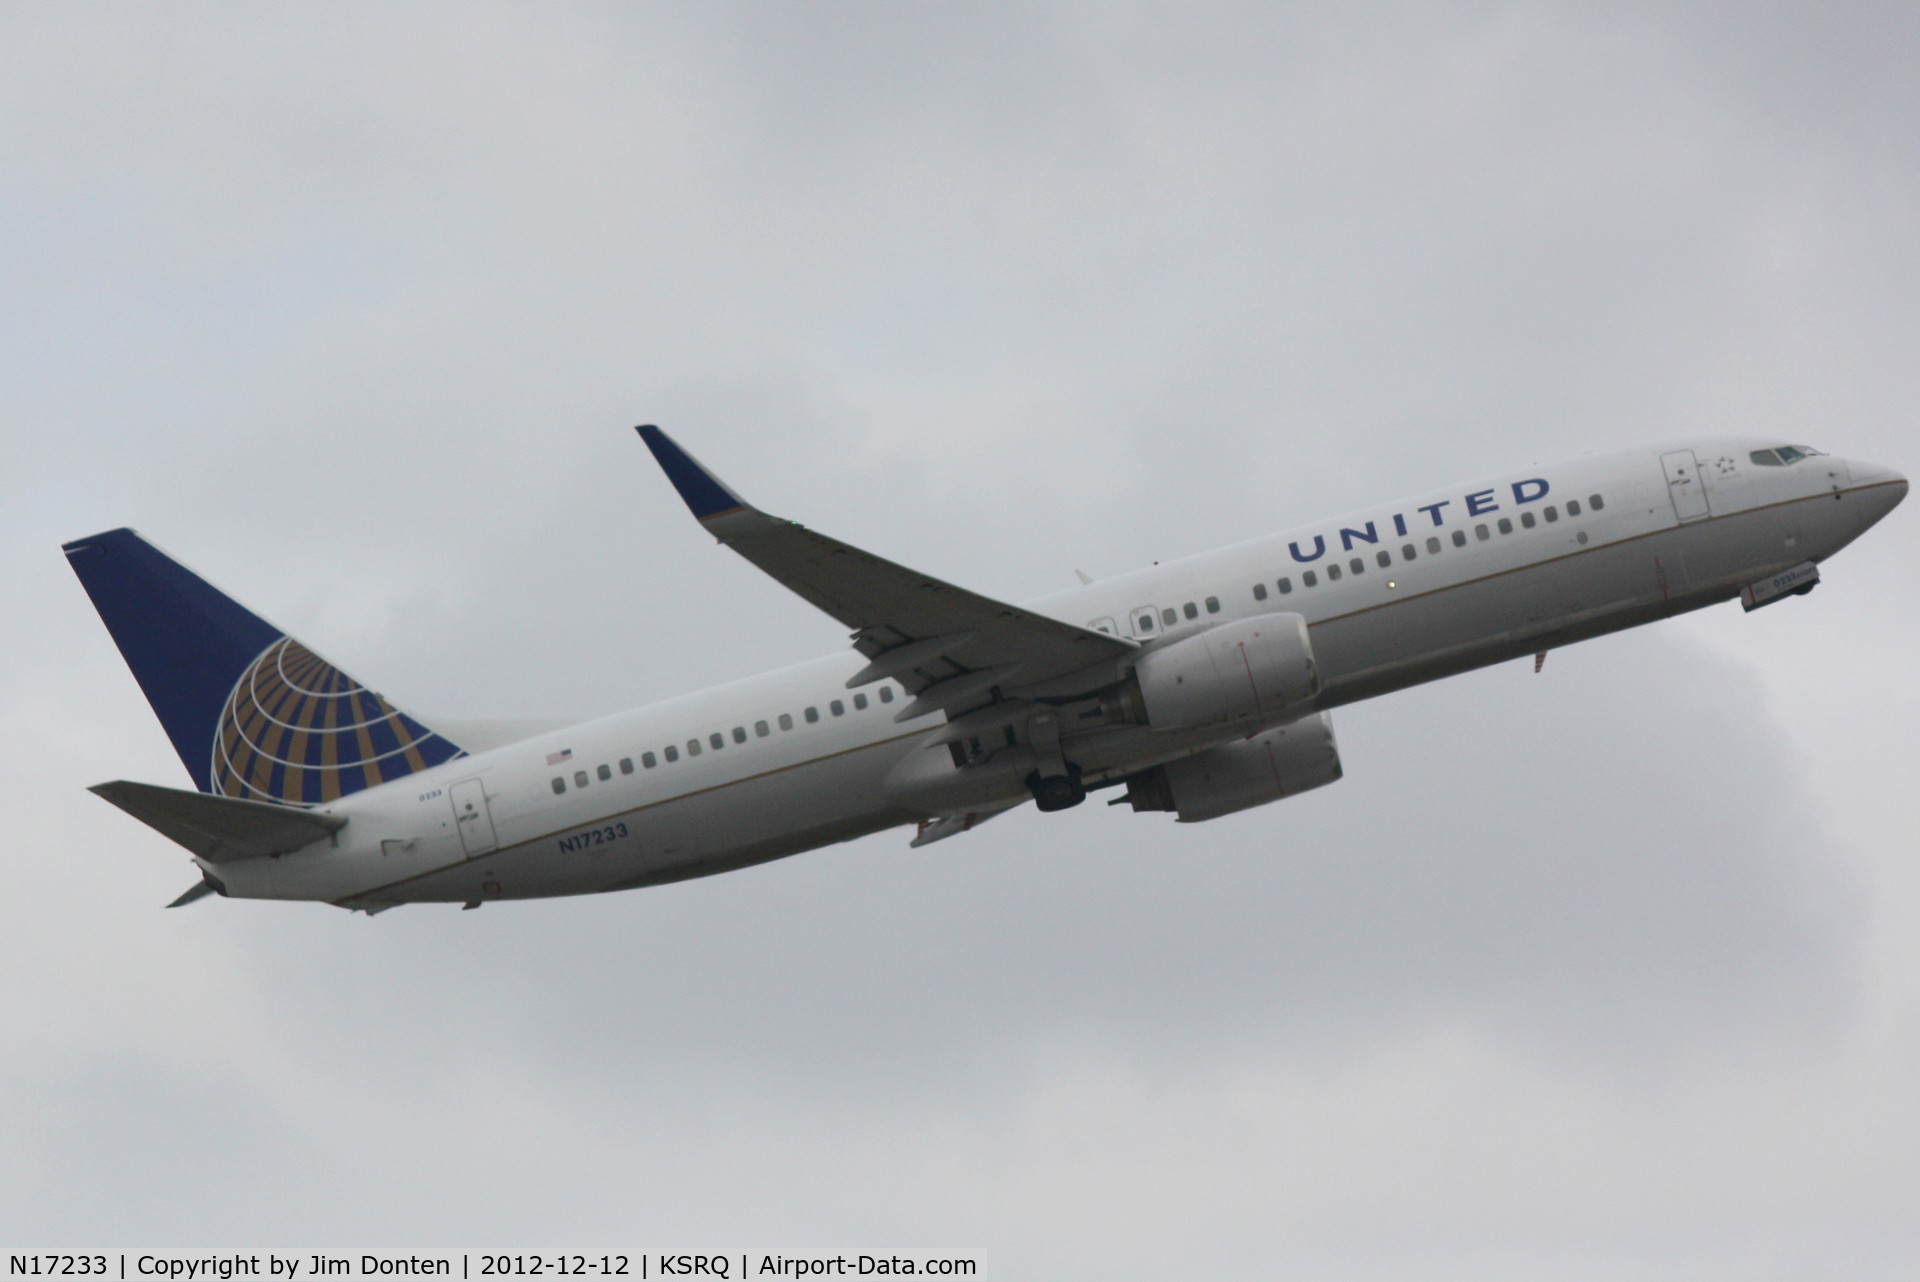 N17233, 1999 Boeing 737-824 C/N 28943, United Flight 1 (N17233) departs Runway 14 at Sarasota-Bradenton International Airport enroute to Chicago-O'Hare International Airport